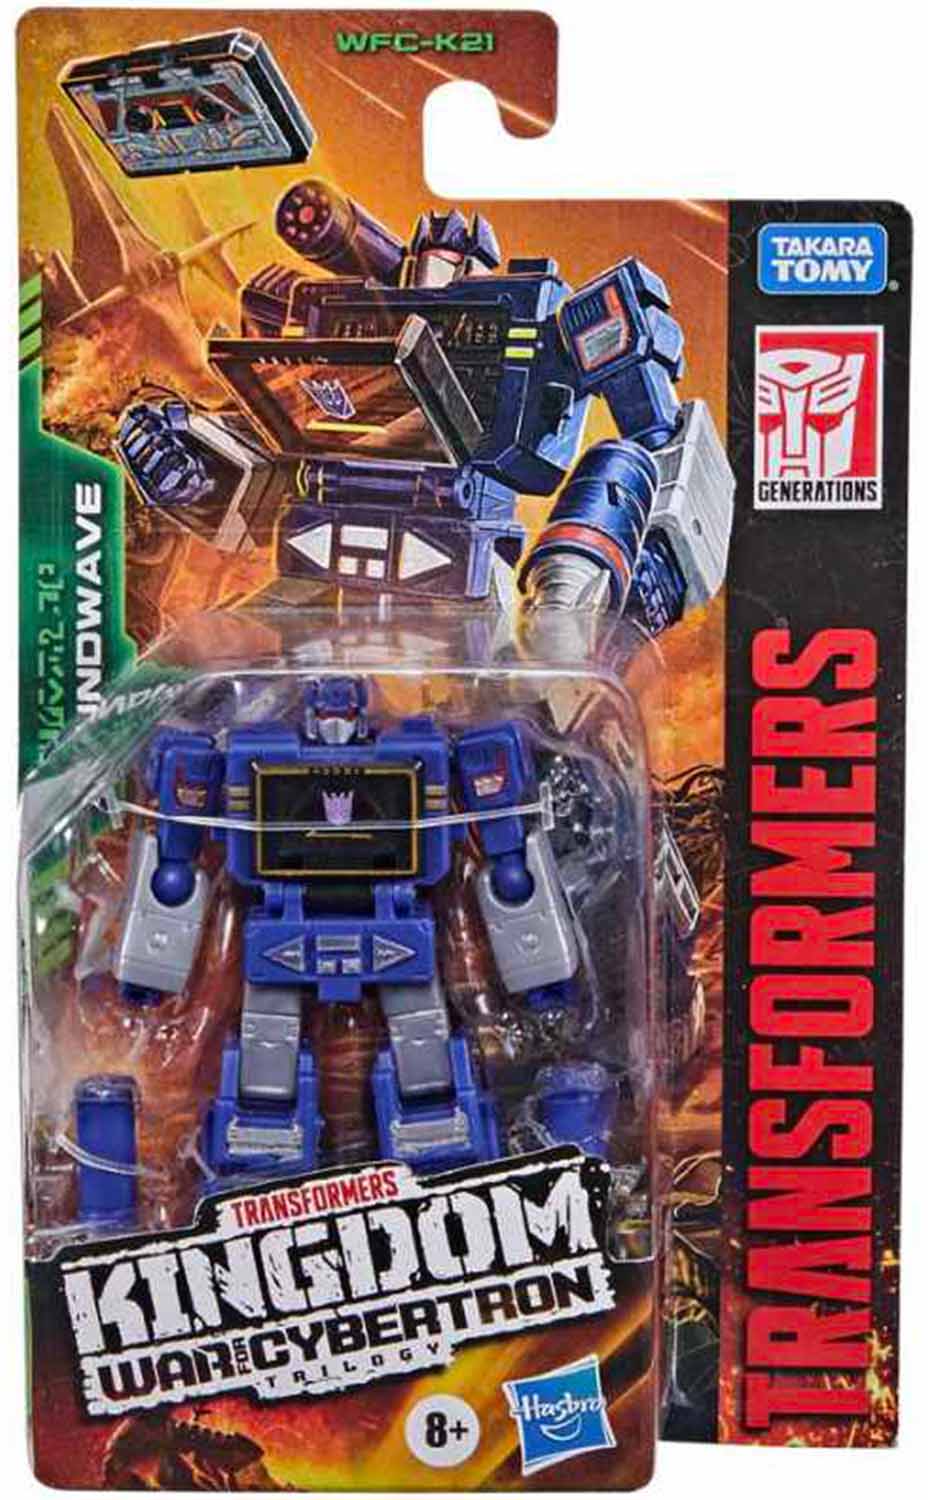 Soundwave Transformers Generations War for Cybertron: Kingdom Core-Klasse WFC-K21 Action-Figur